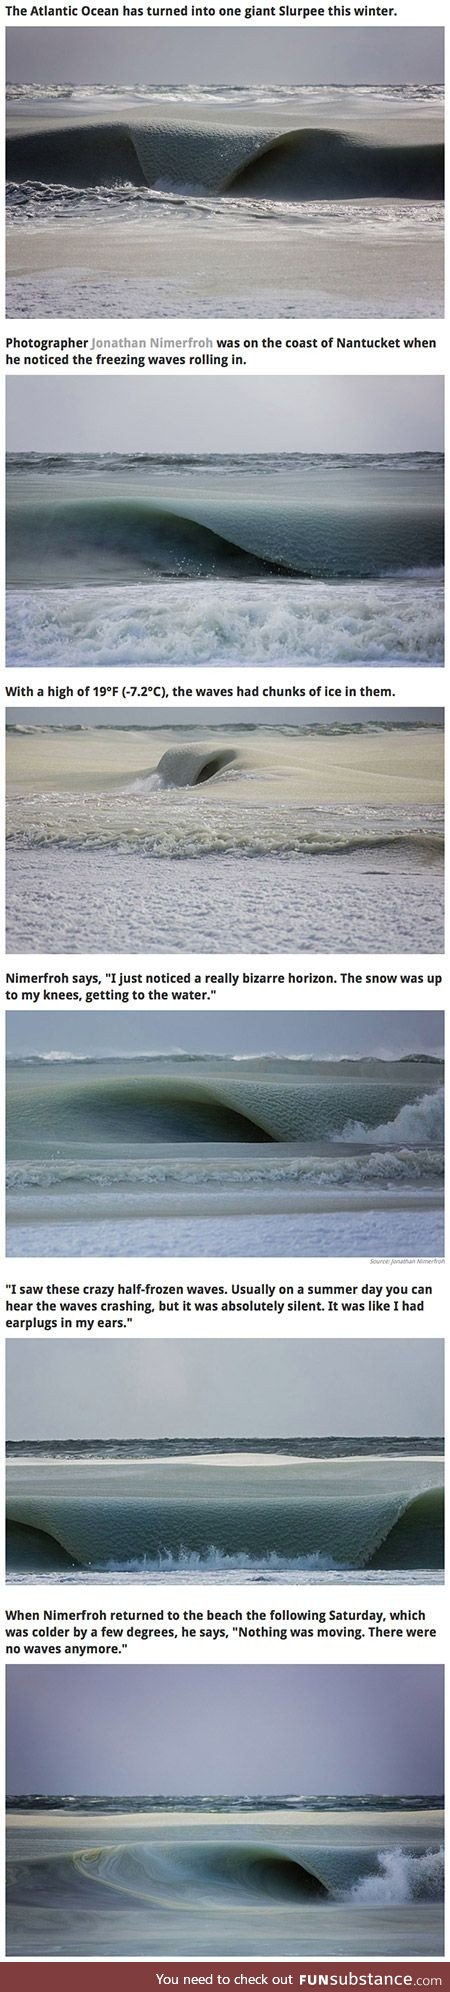 Half-frozen waves